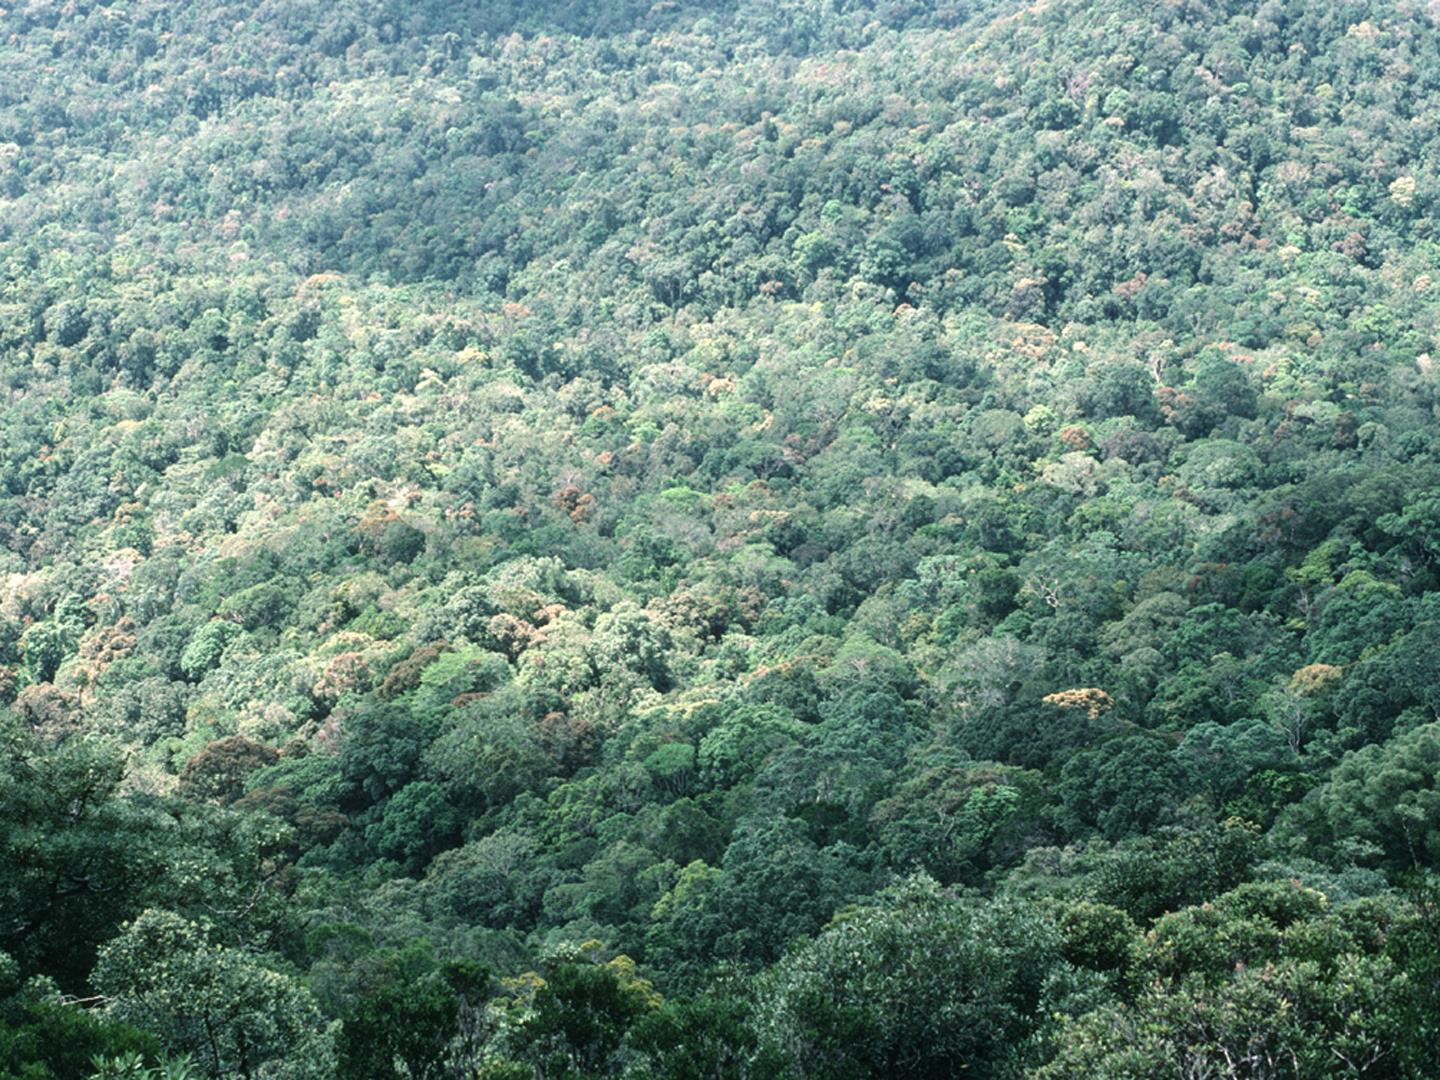 Stimulace fotosyntézy zvýšeným CO 2 nevede k trvalé stimulaci růstu stromů v přirozených podmínkách.